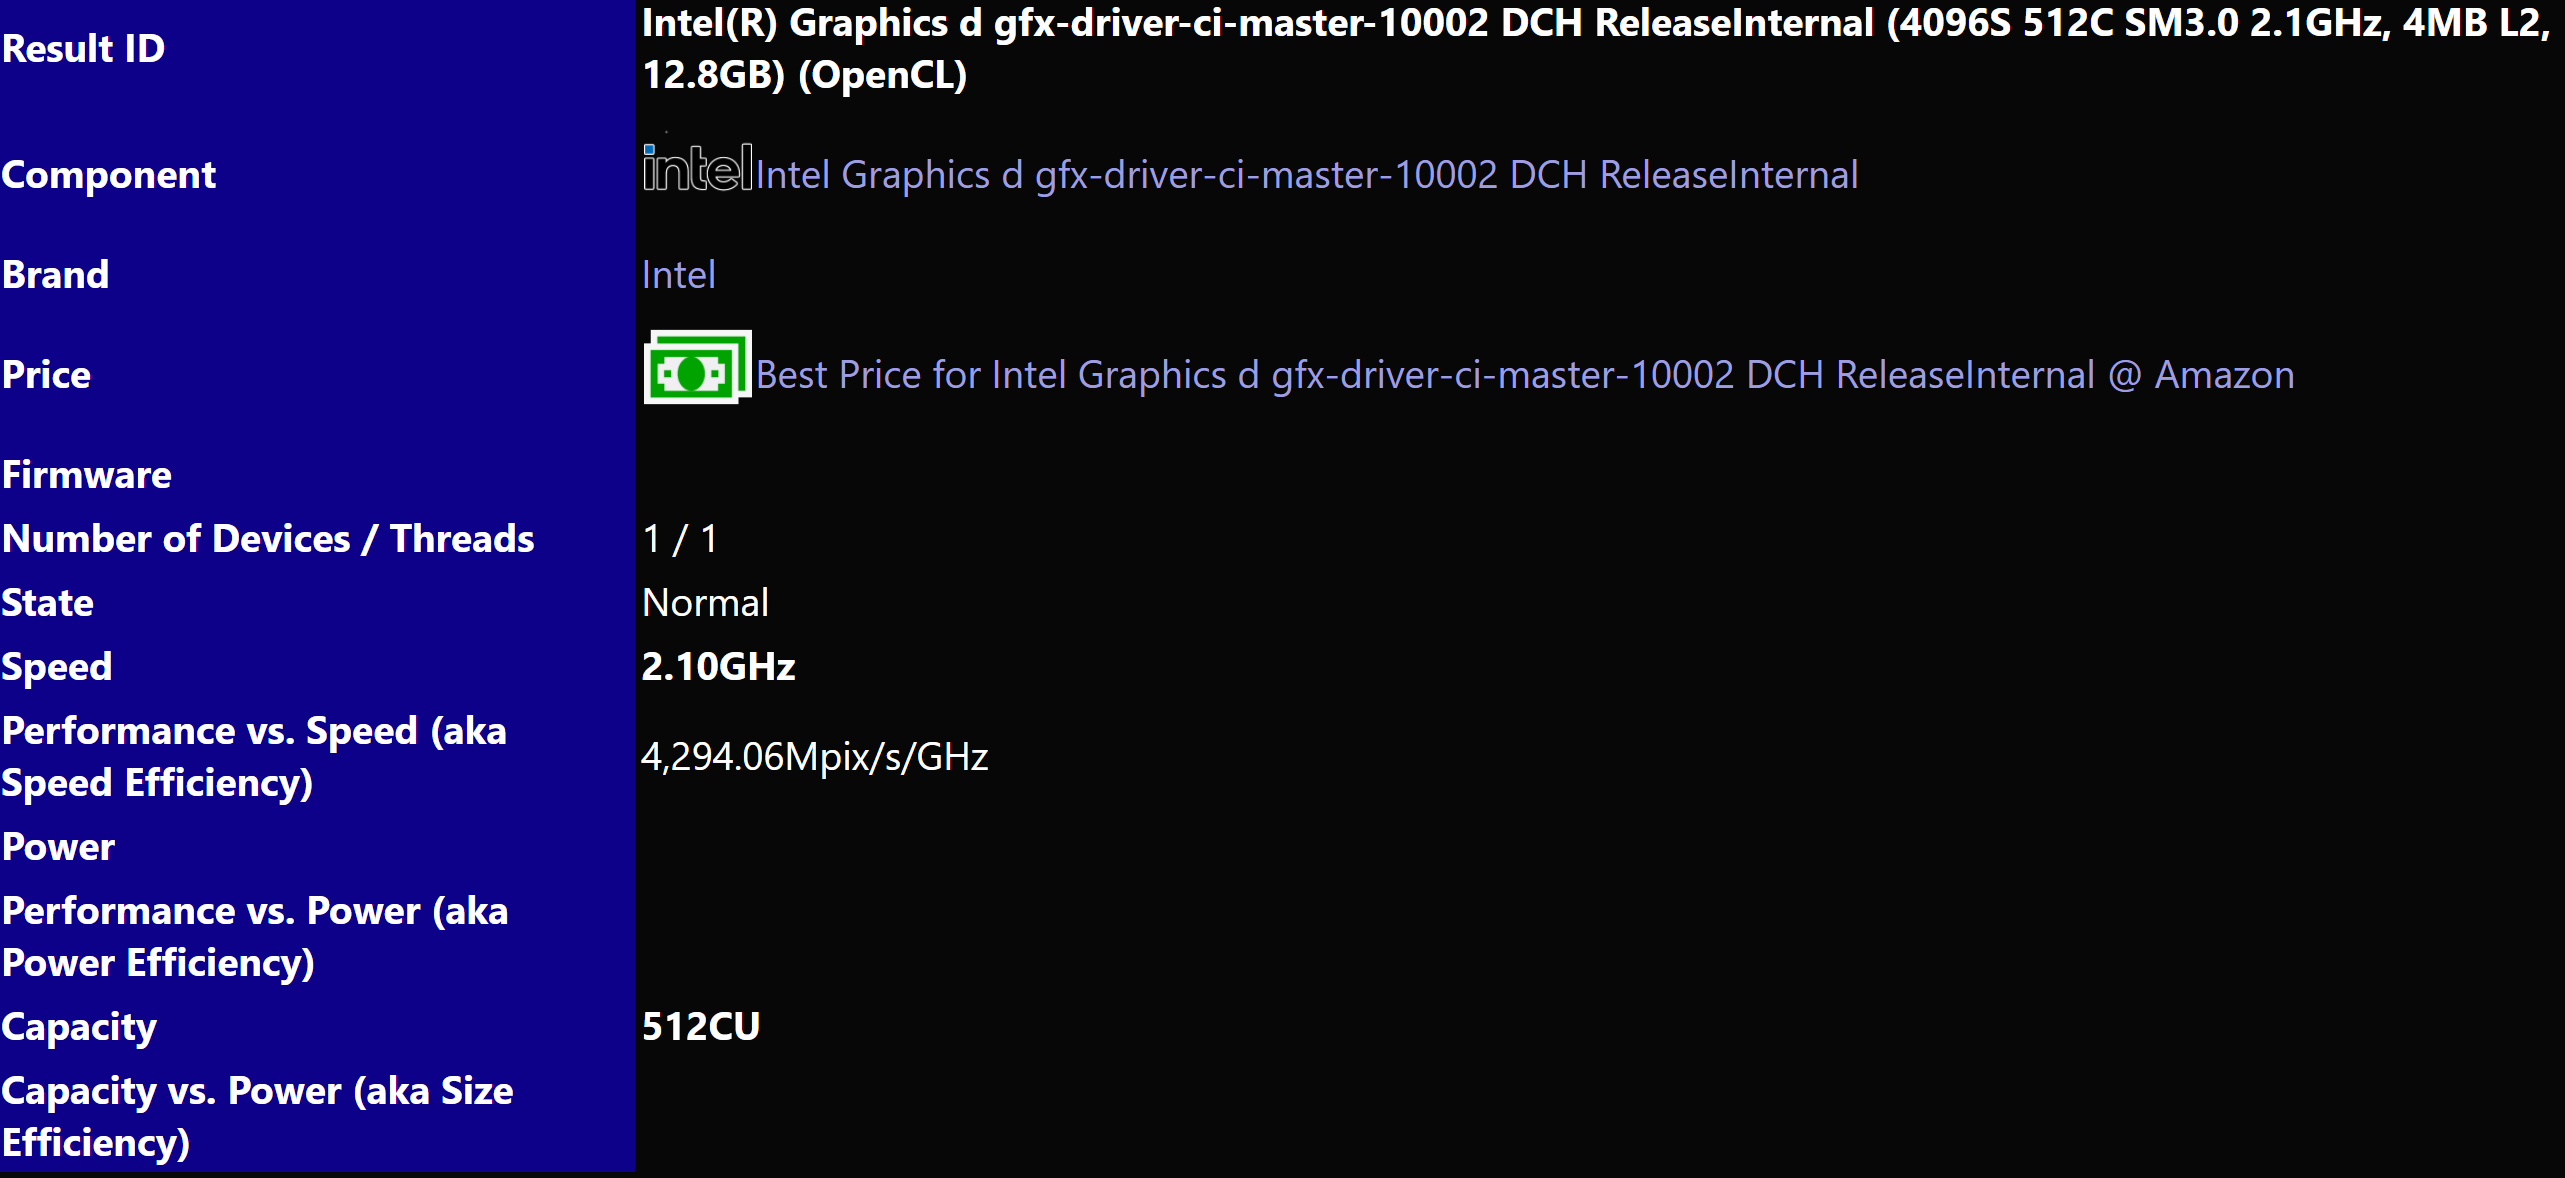 Rò rỉ benchmark hiệu năng, Intel Arc Alchemist HPG "out trình" NVIDIA RTX 3070 Ti - Image 1